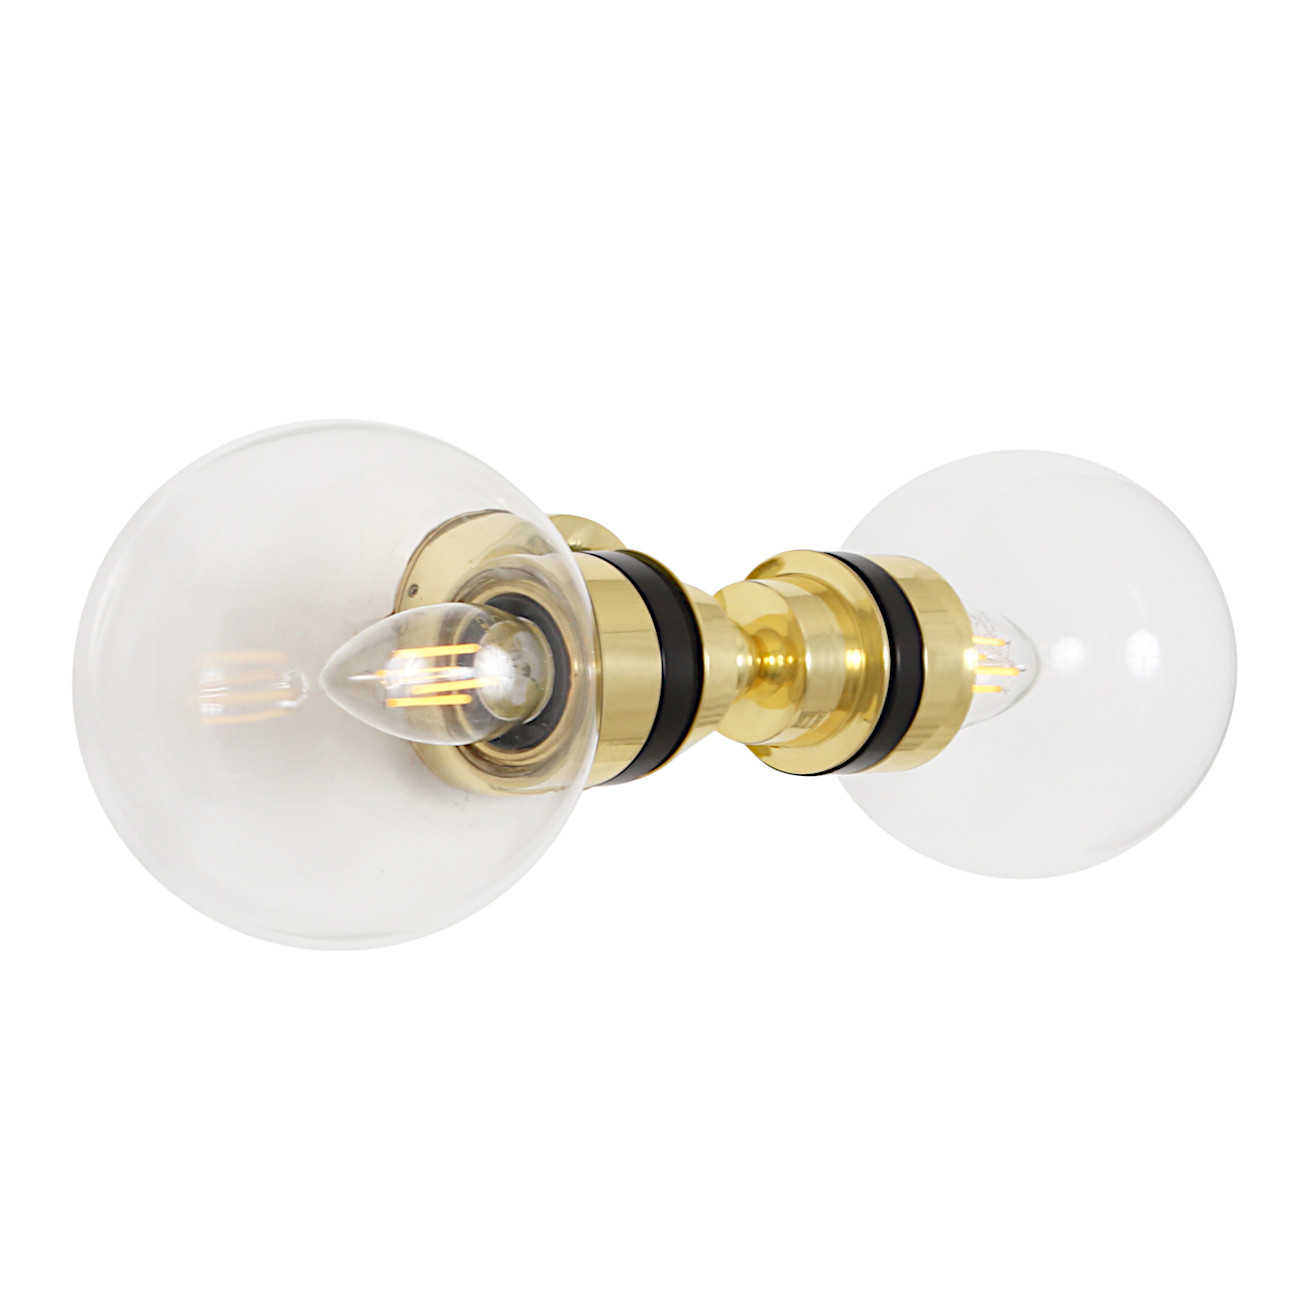 Bad-Wandlampe mit zwei Glaskugeln (klares, prismatisches, opales Glas), IP65: Badezimmer-Lampe mit zwei Glaskugeln, Messing poliert, klares Glas